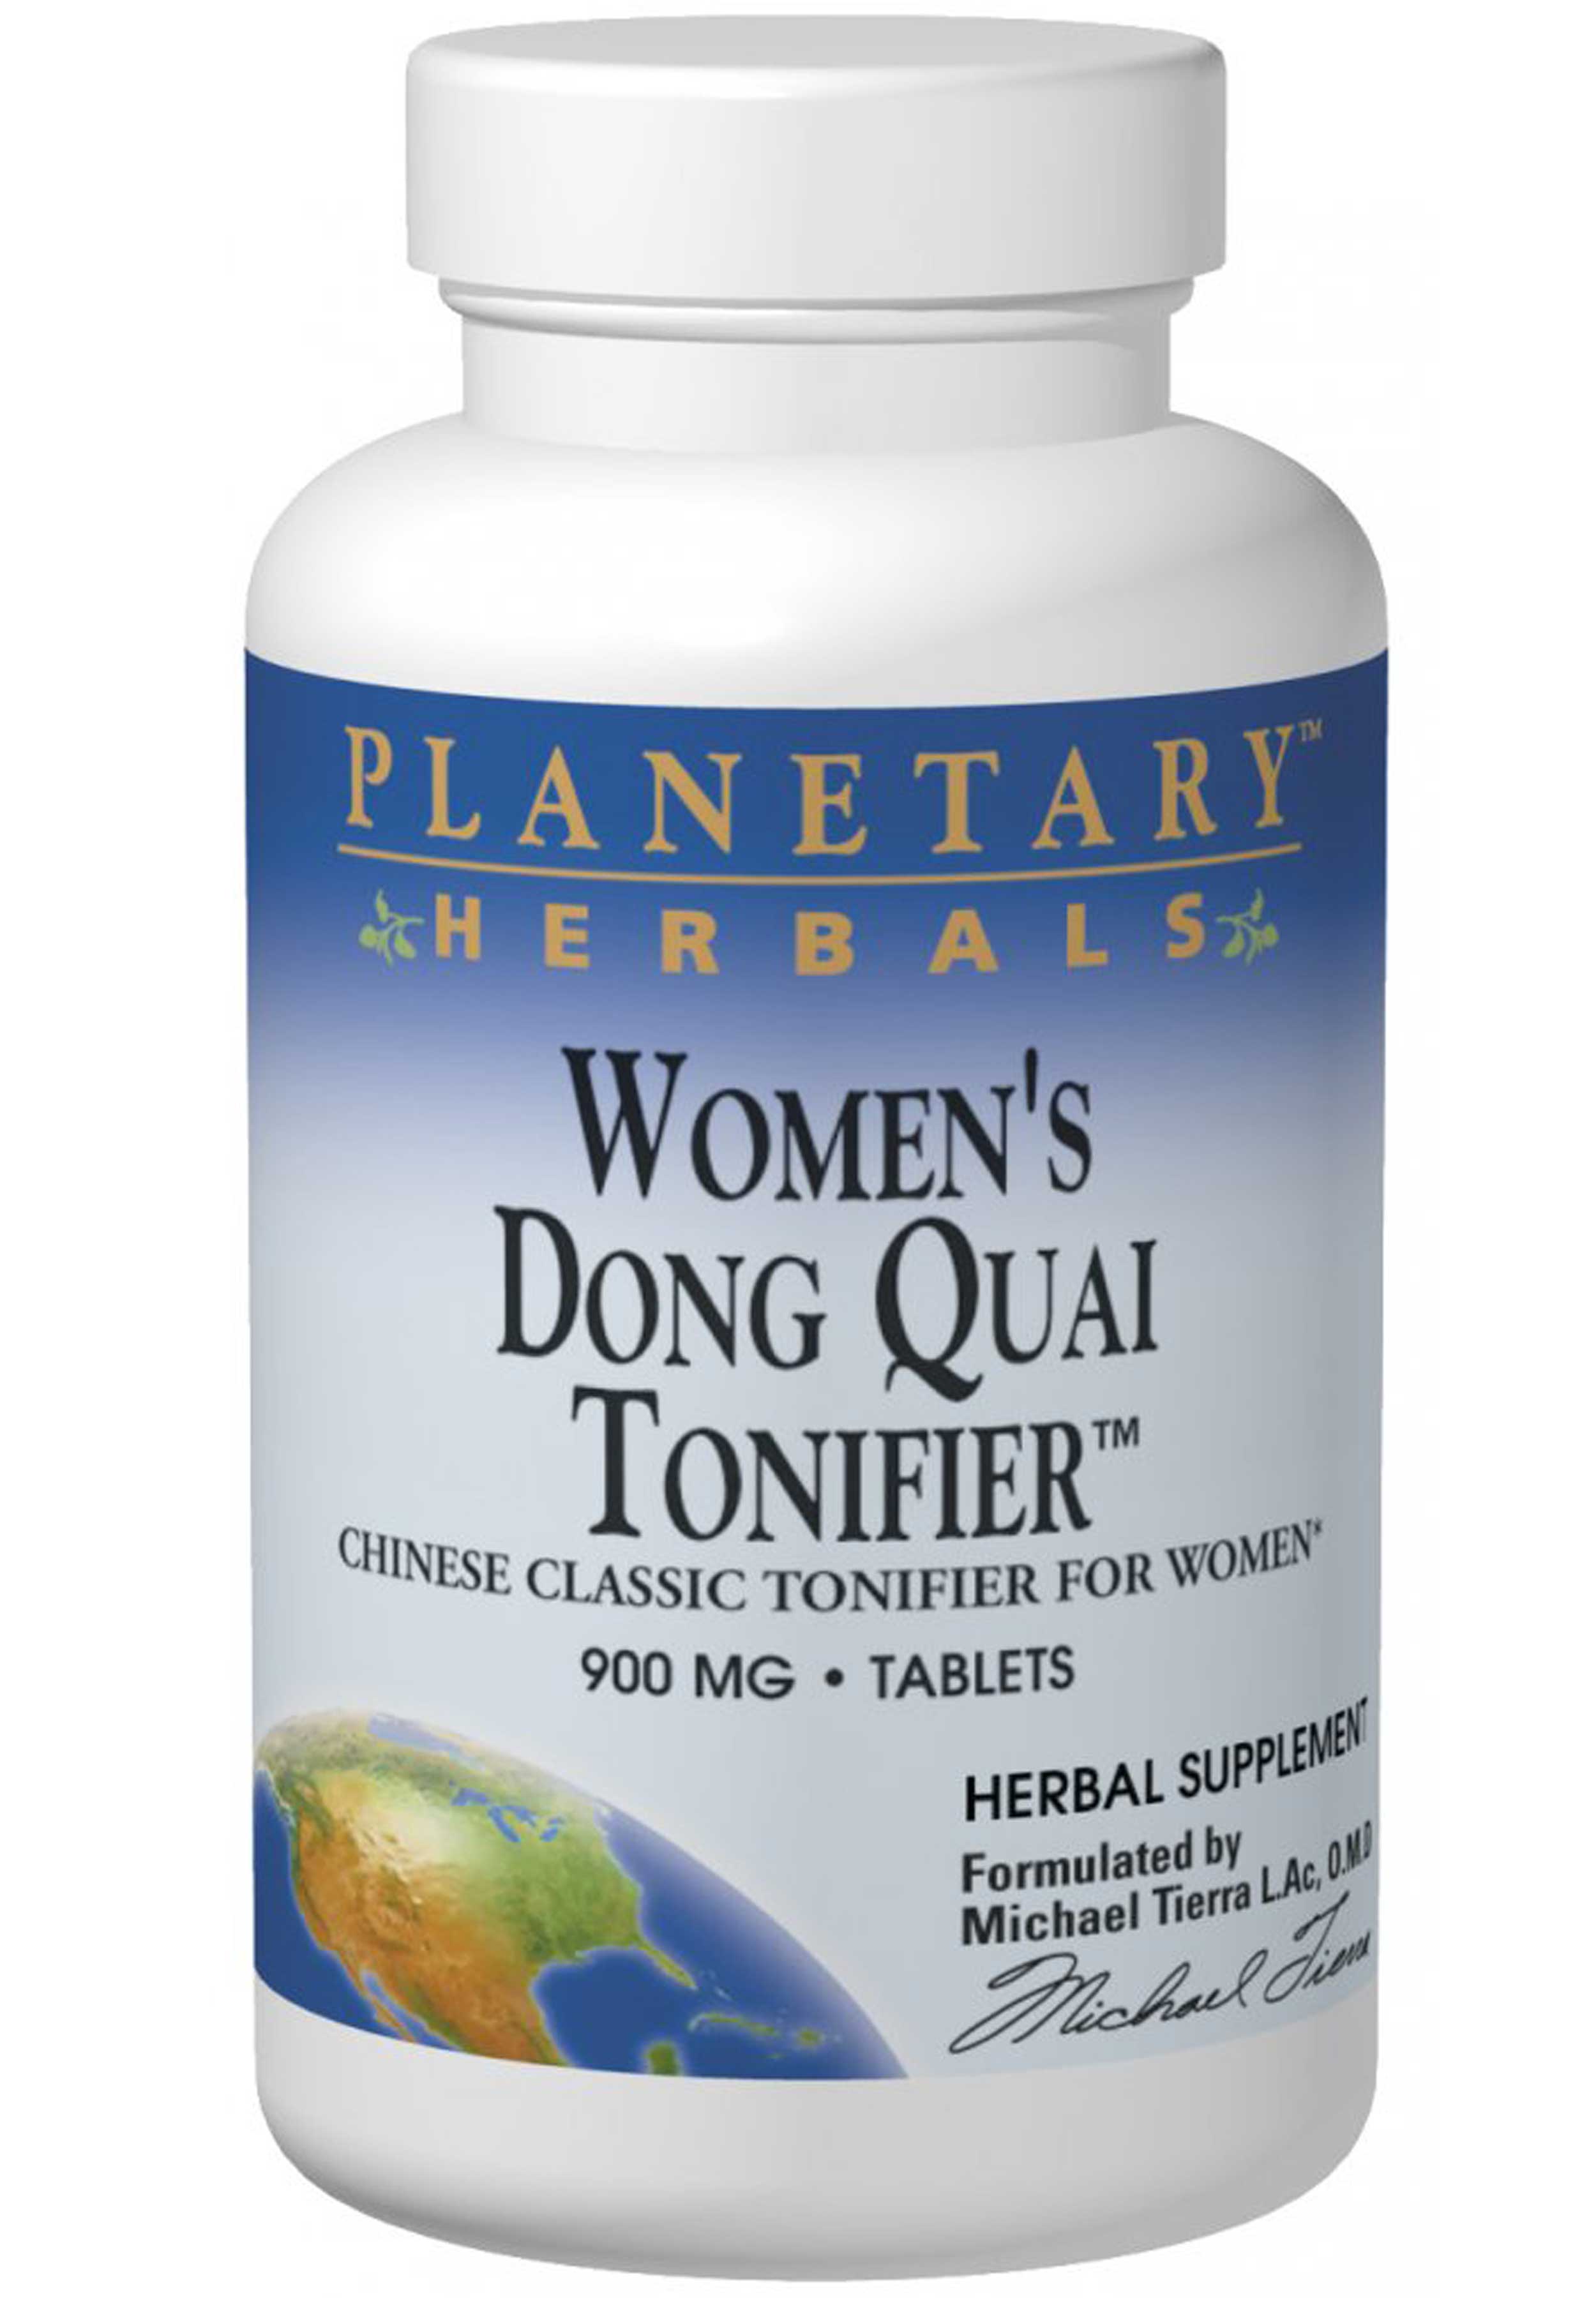 Planetary Herbals Women's Dong Quai Tonifier™